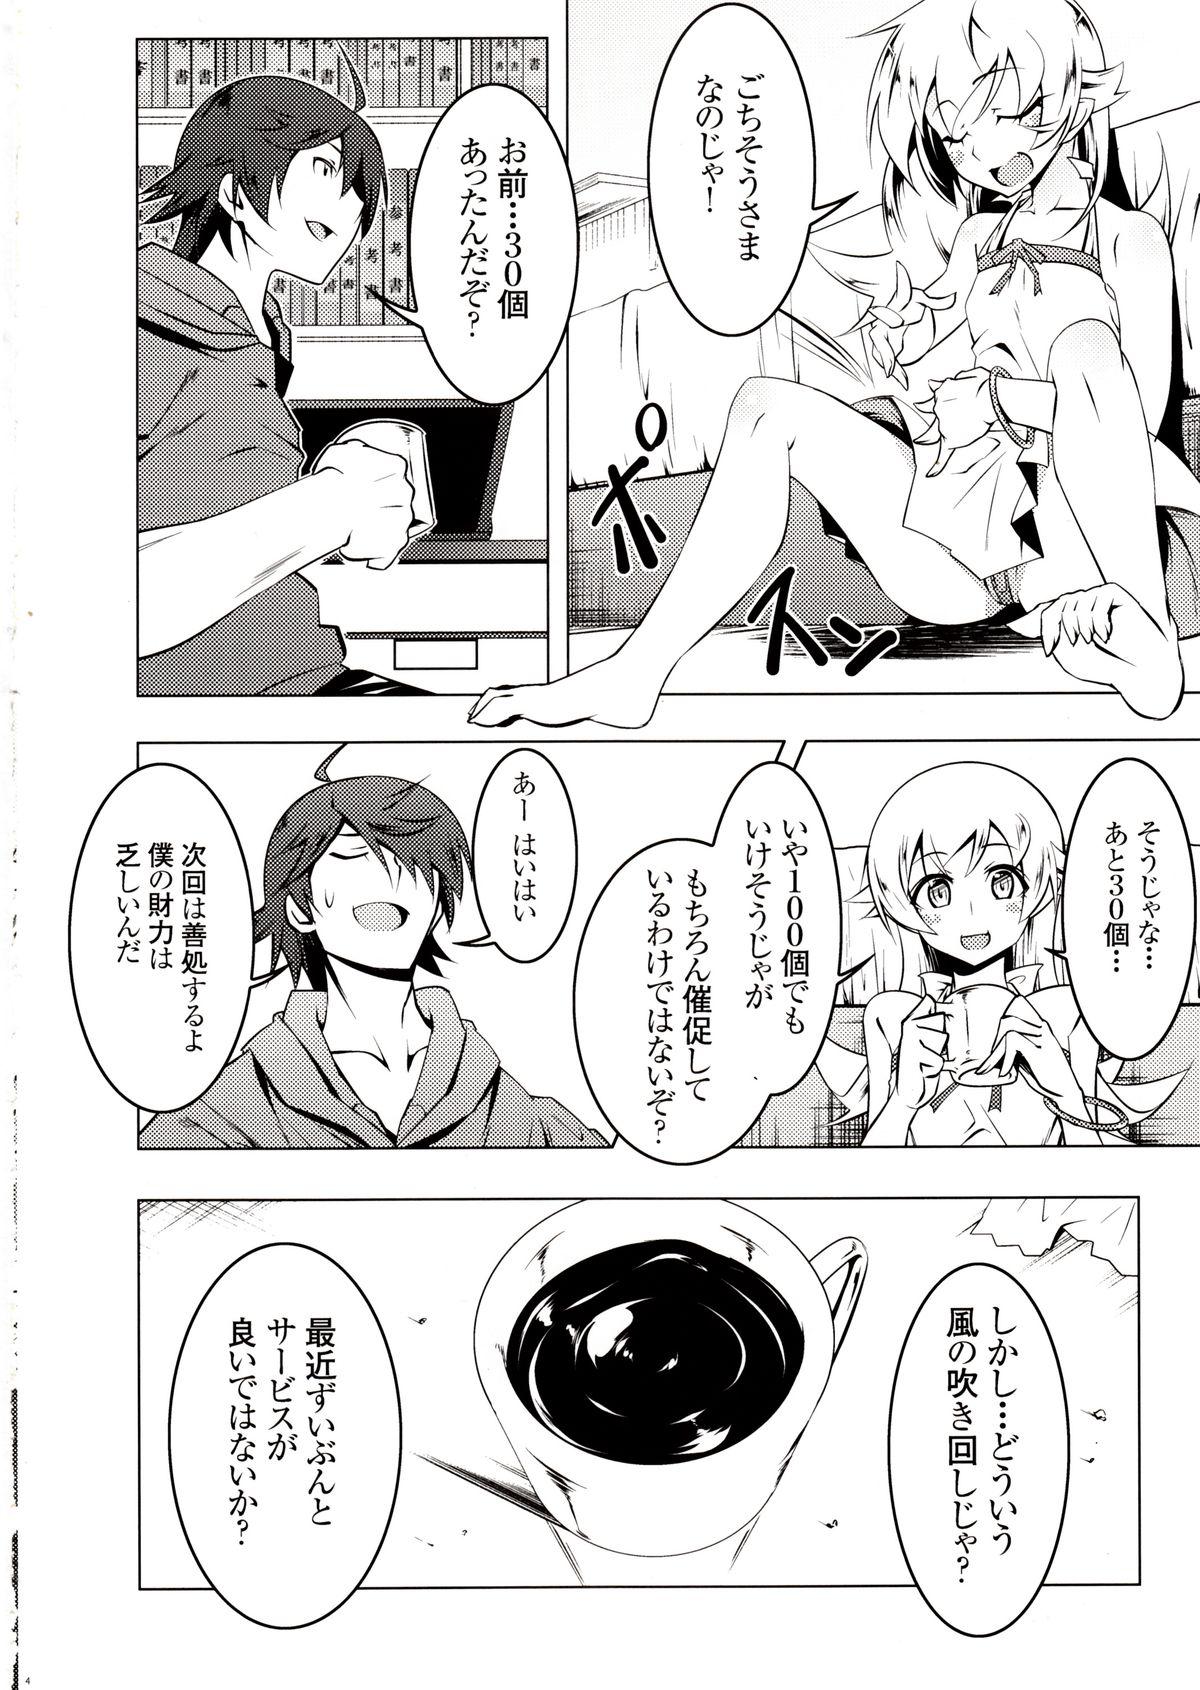 Ass Netoraregatari Ni - Bakemonogatari 4some - Page 3